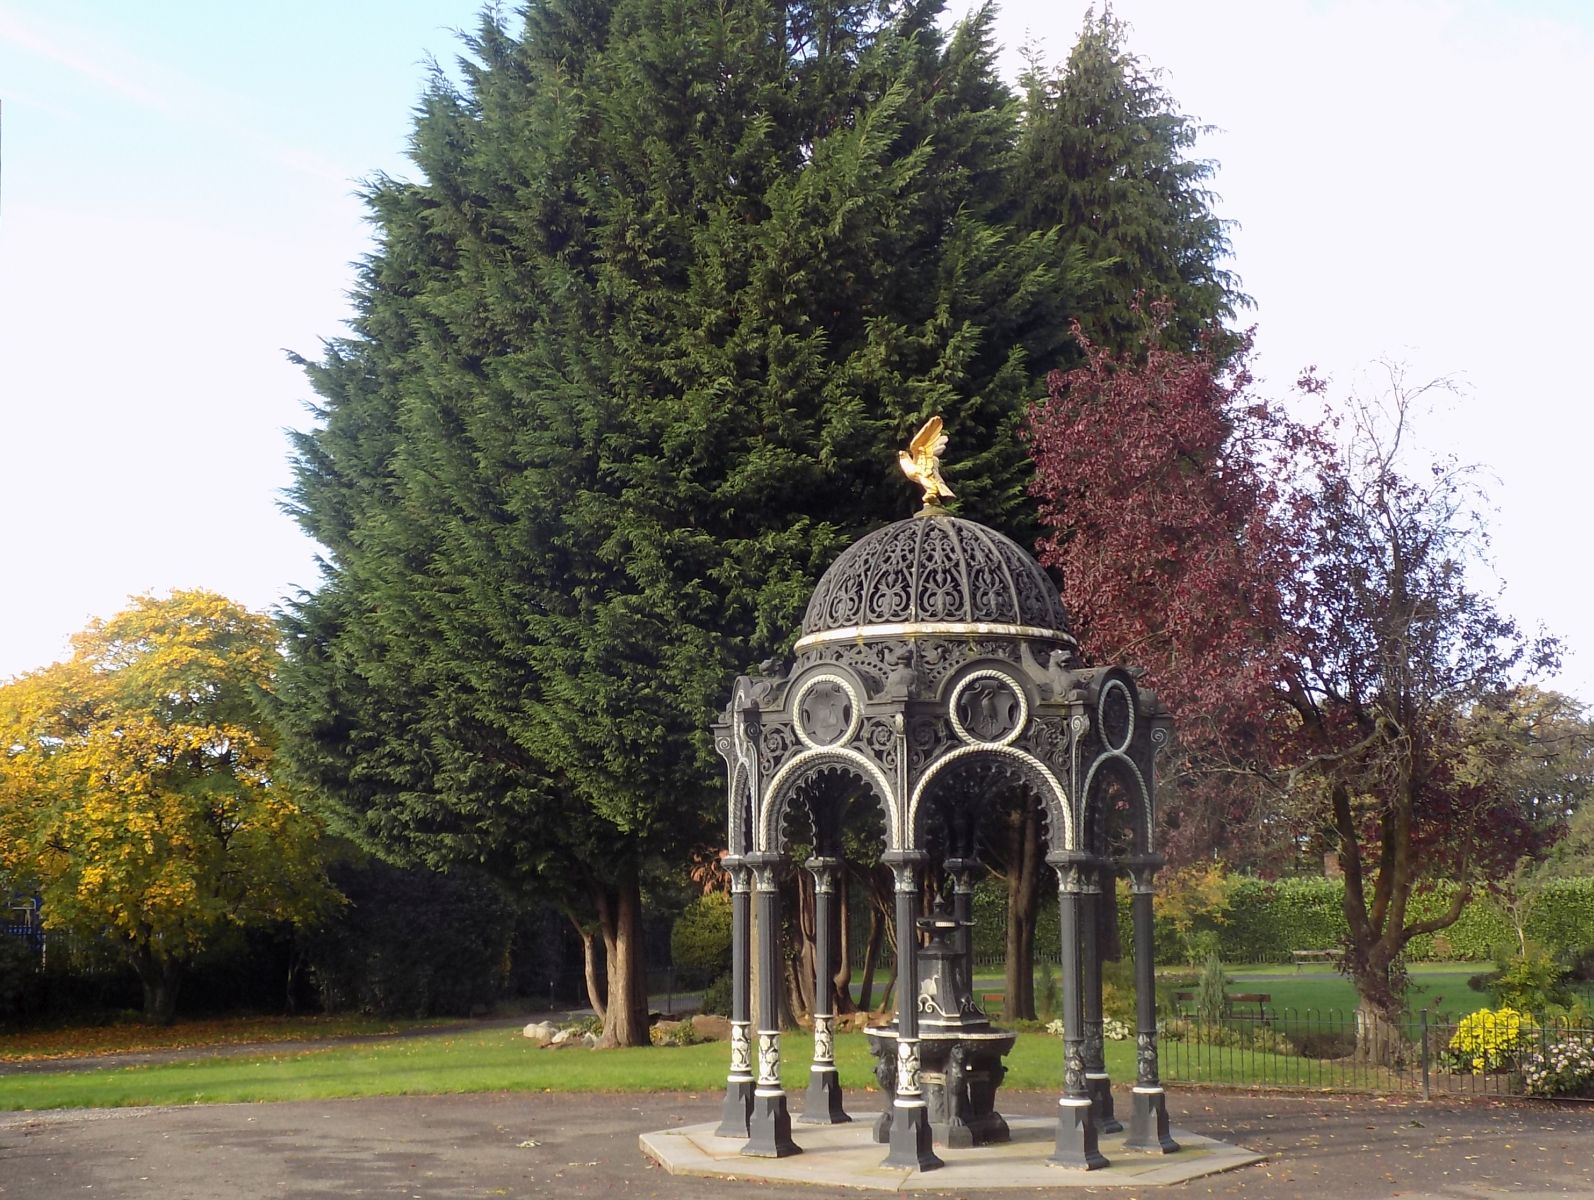 Edwardian Ornamental Fountain in Dalmuir Park